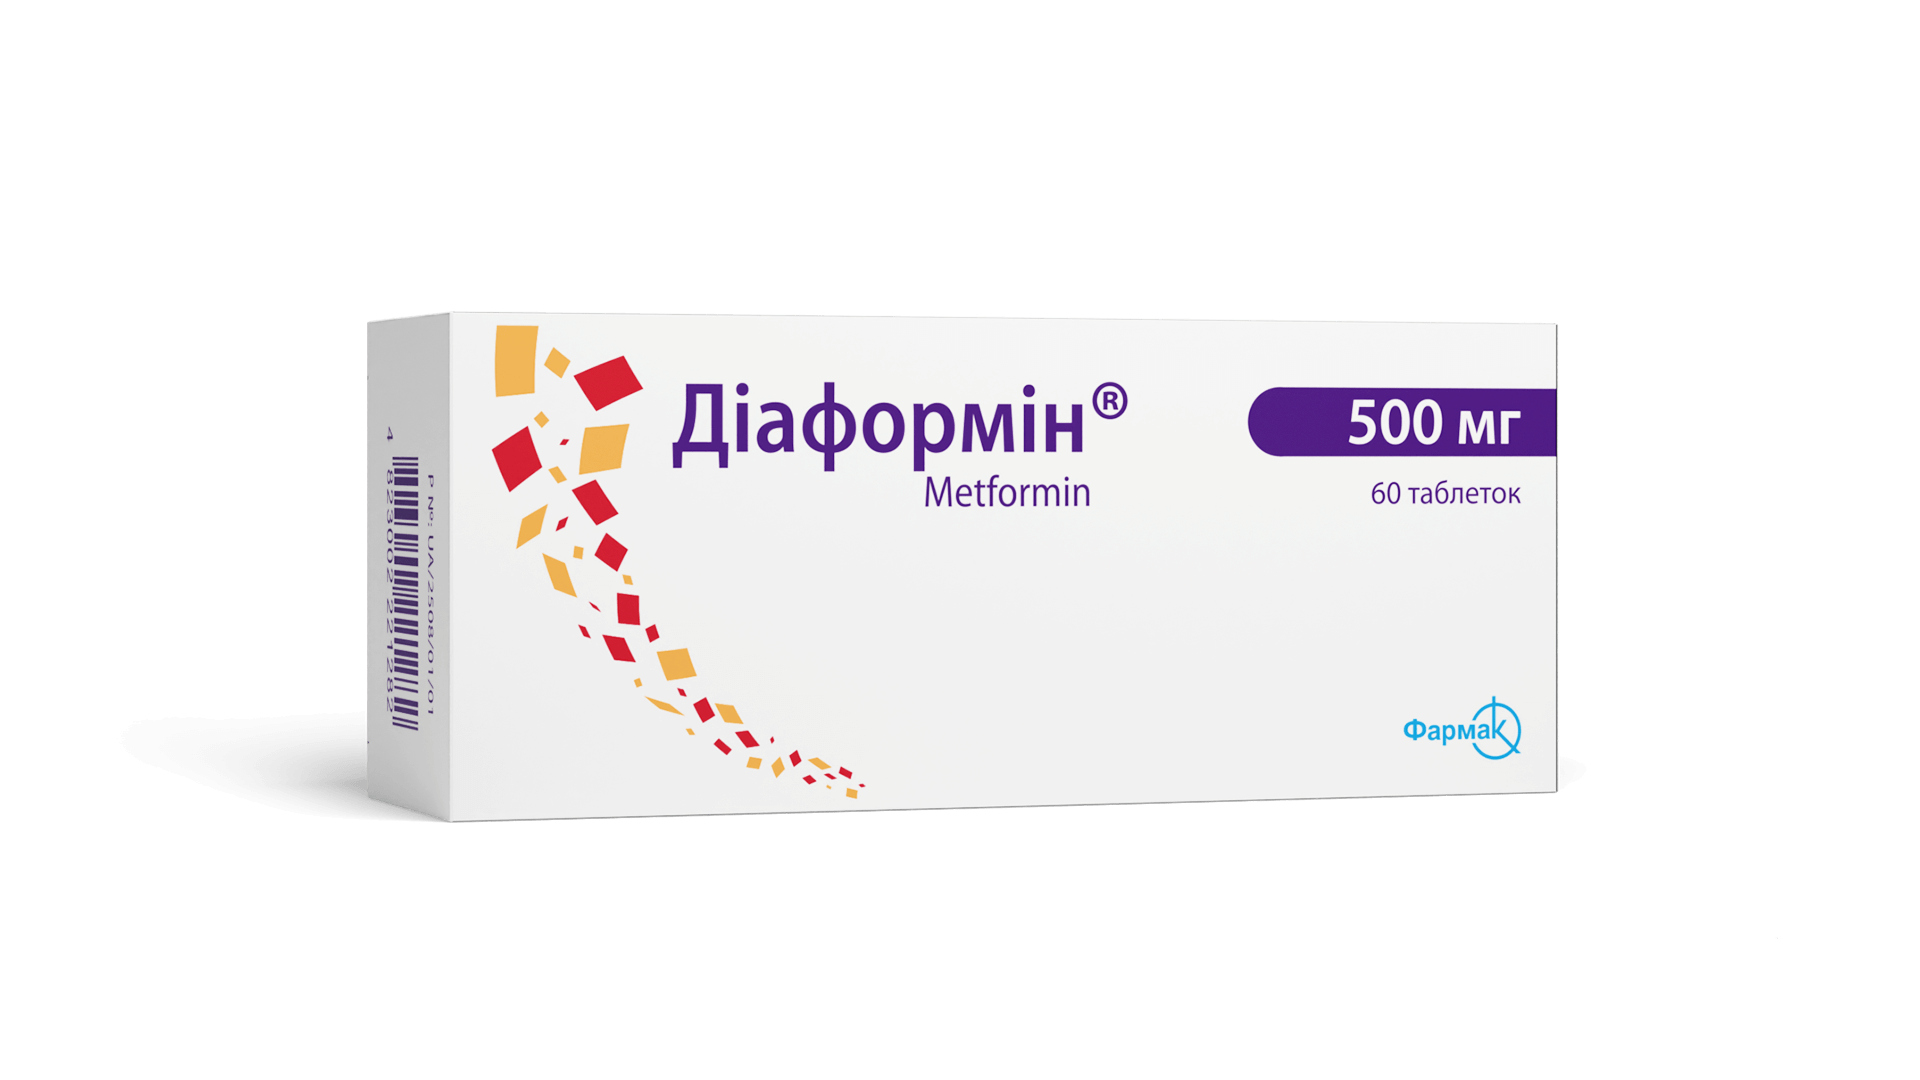 Диаформин® 500 мг (4)